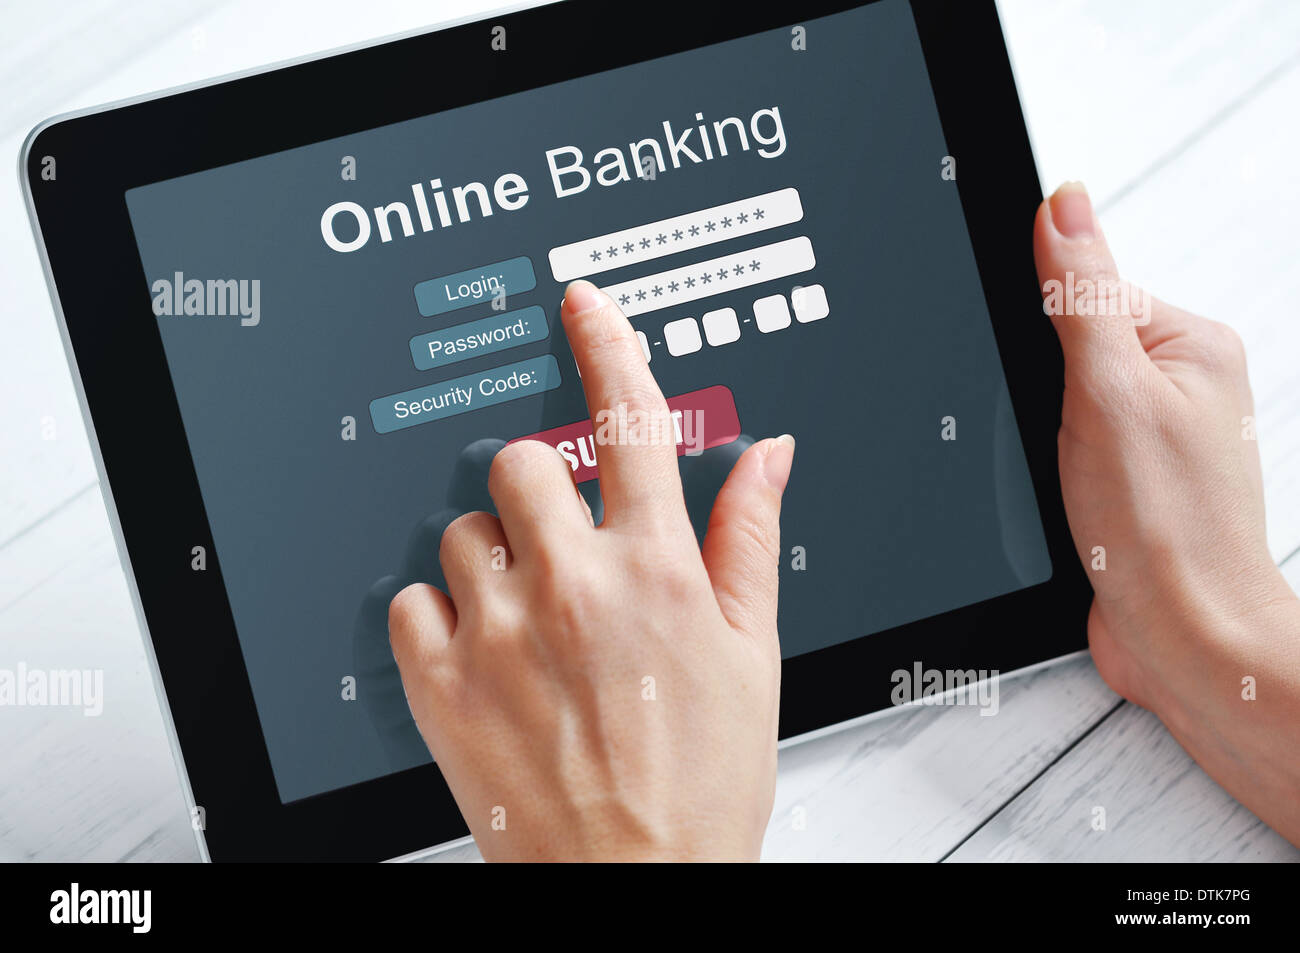 Manos femeninas mediante banca en línea en la pantalla táctil del dispositivo Foto de stock